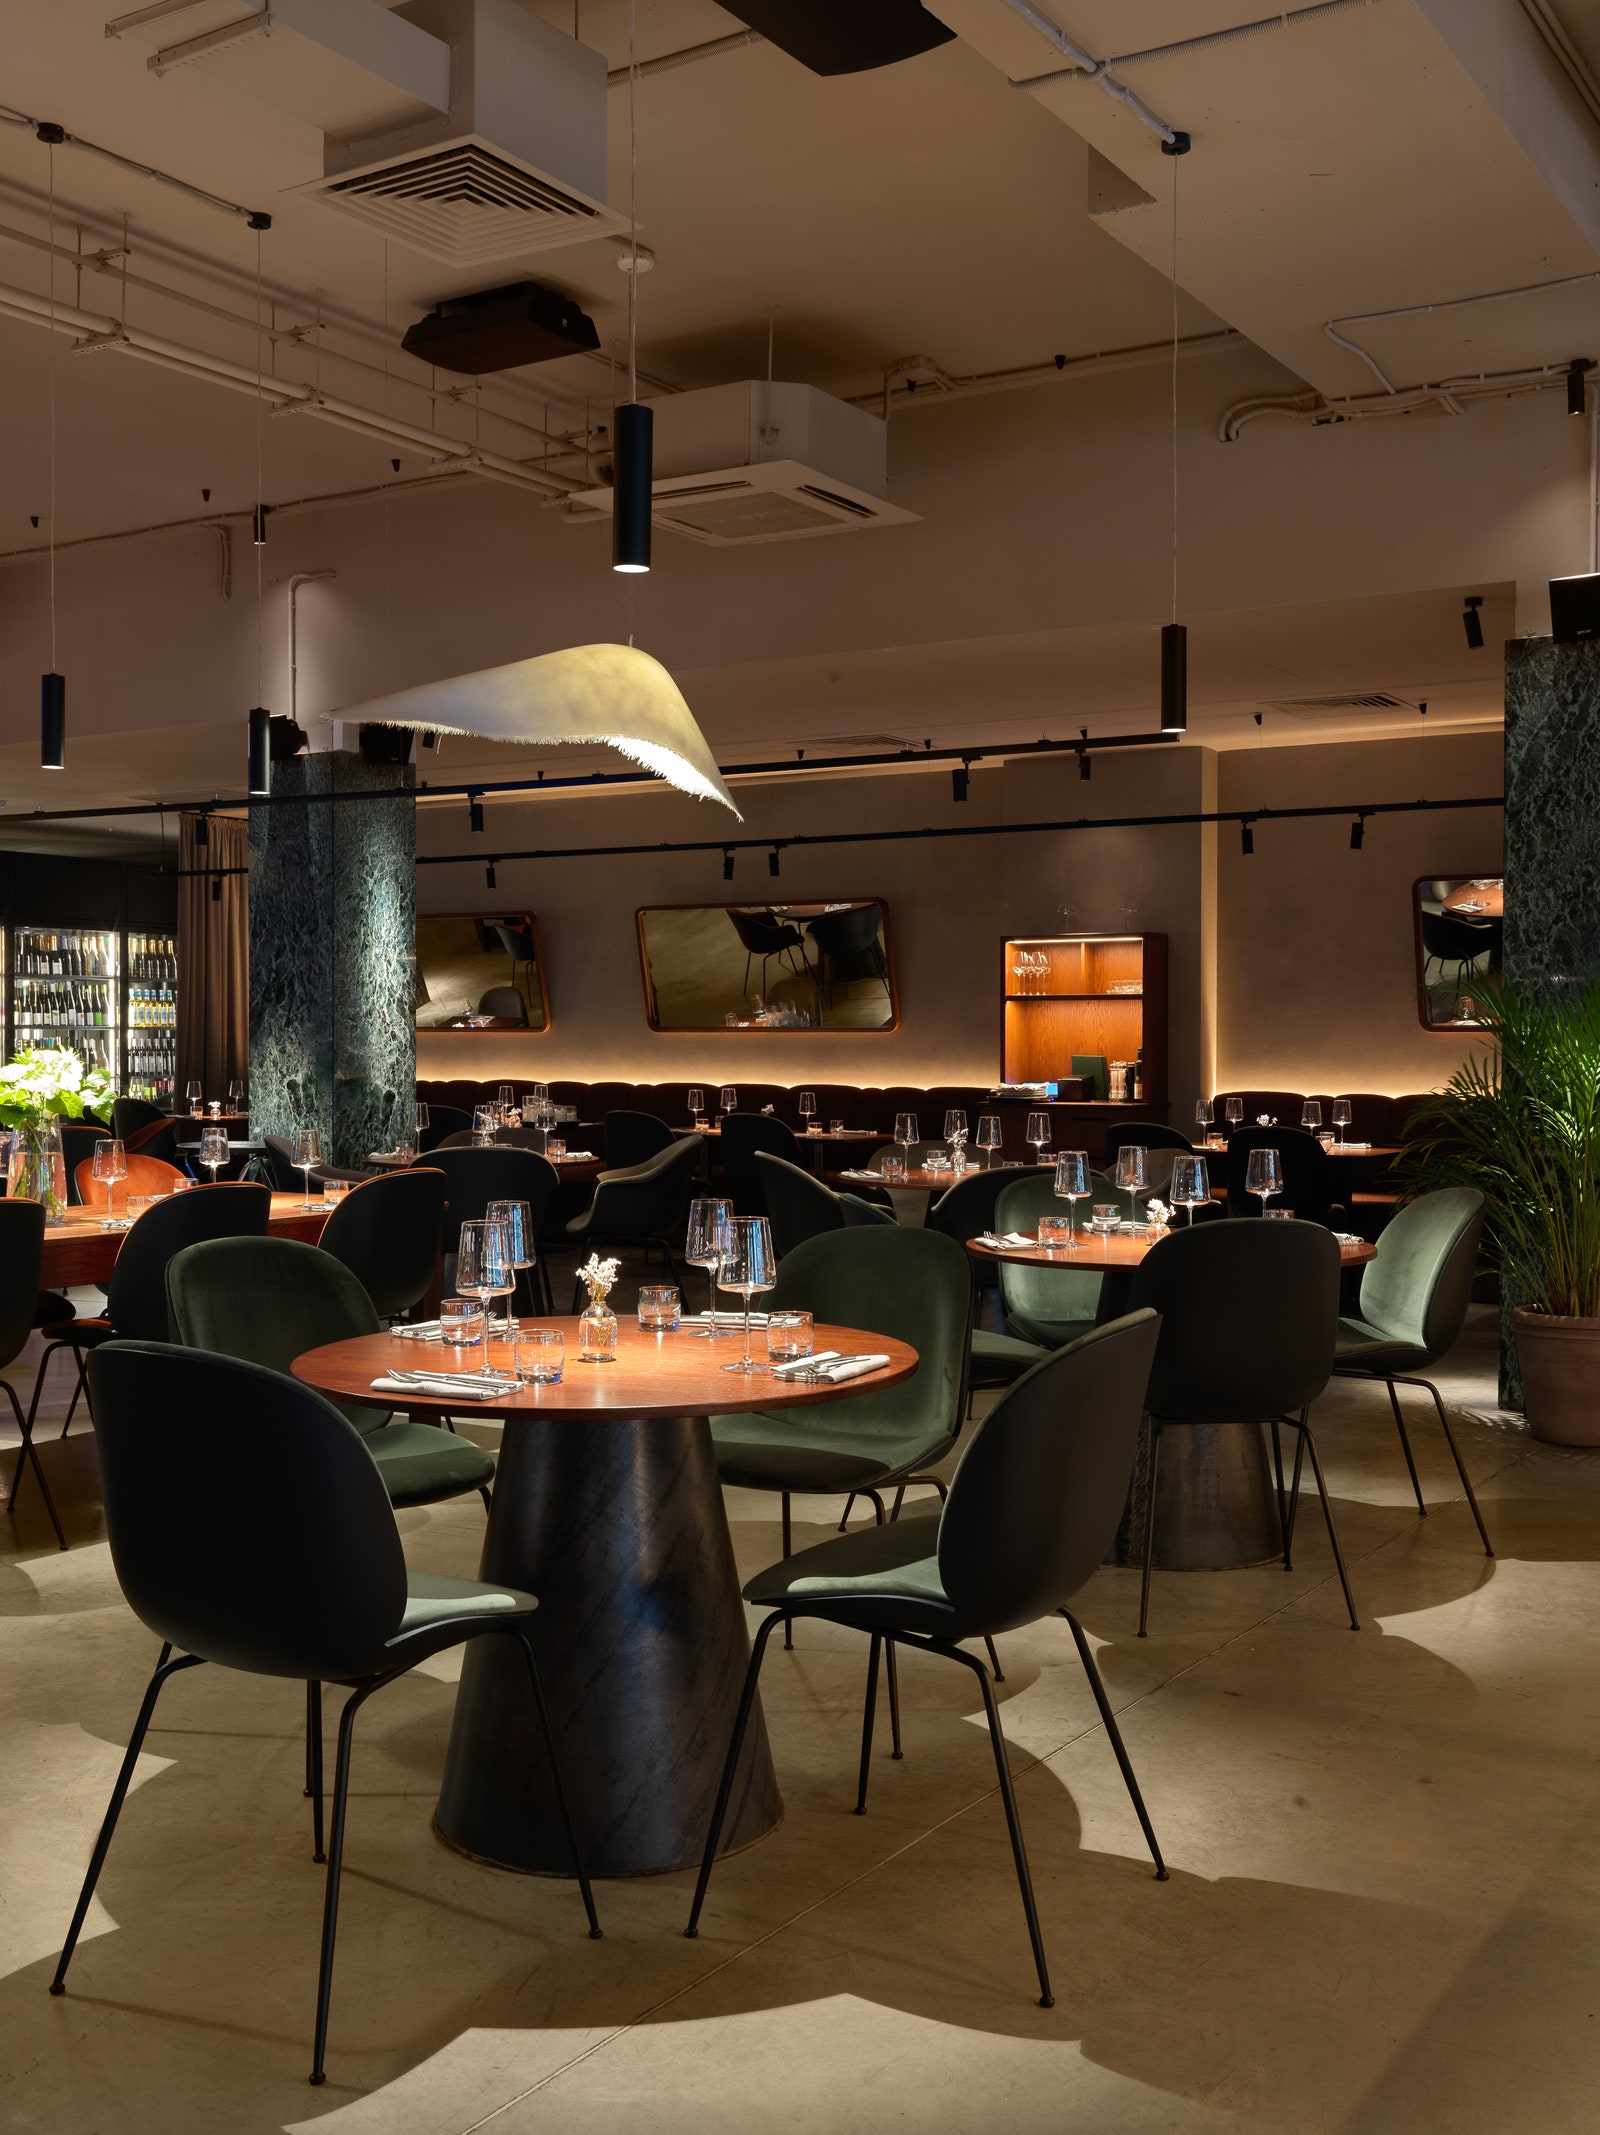 Полный гид AD по ресторанам СанктПетербурга 2021 19 заведений с красивым интерьером и классной кухней